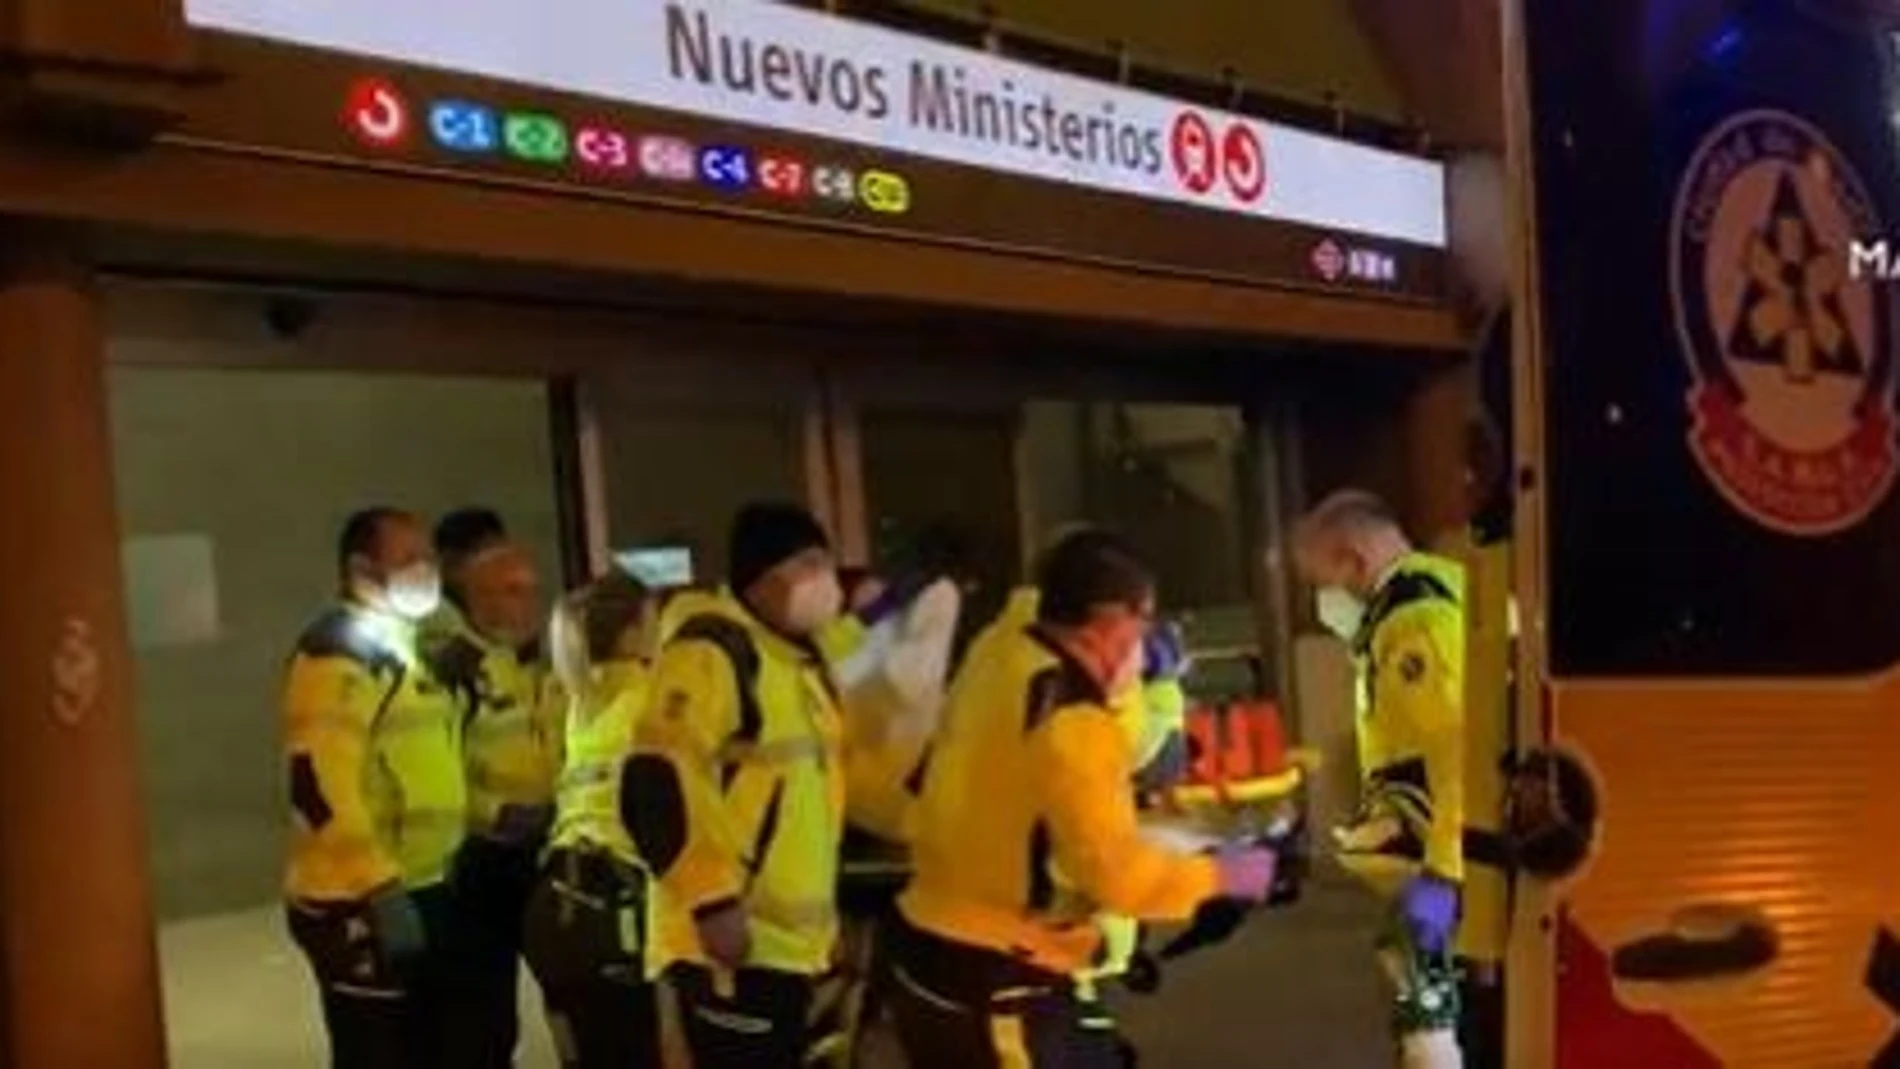 Grave un joven de 24 años tras caer ocho metros por las escaleras de Nuevos Ministerios.EMERGENCIAS MADRID29/12/2022